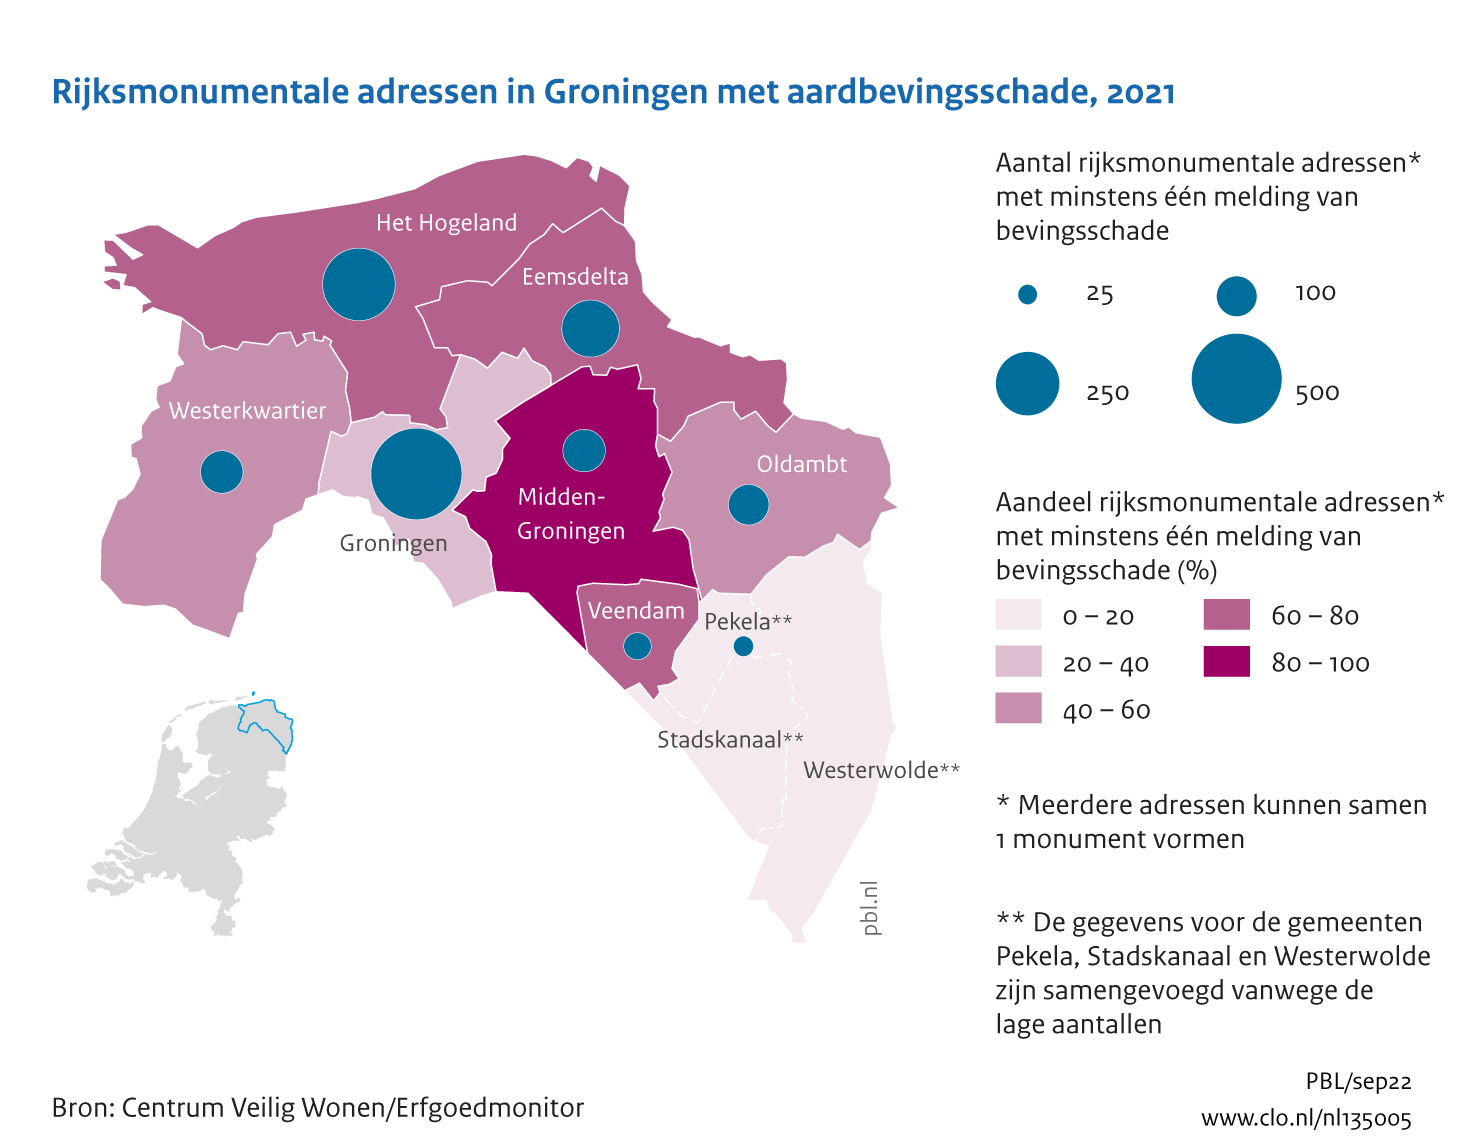 Figuur  Rijksmonumentale adressen in Groningen met aardbevingsschade, per eind 2021 (cumulatief vanaf 2012). In de rest van de tekst wordt deze figuur uitgebreider uitgelegd.